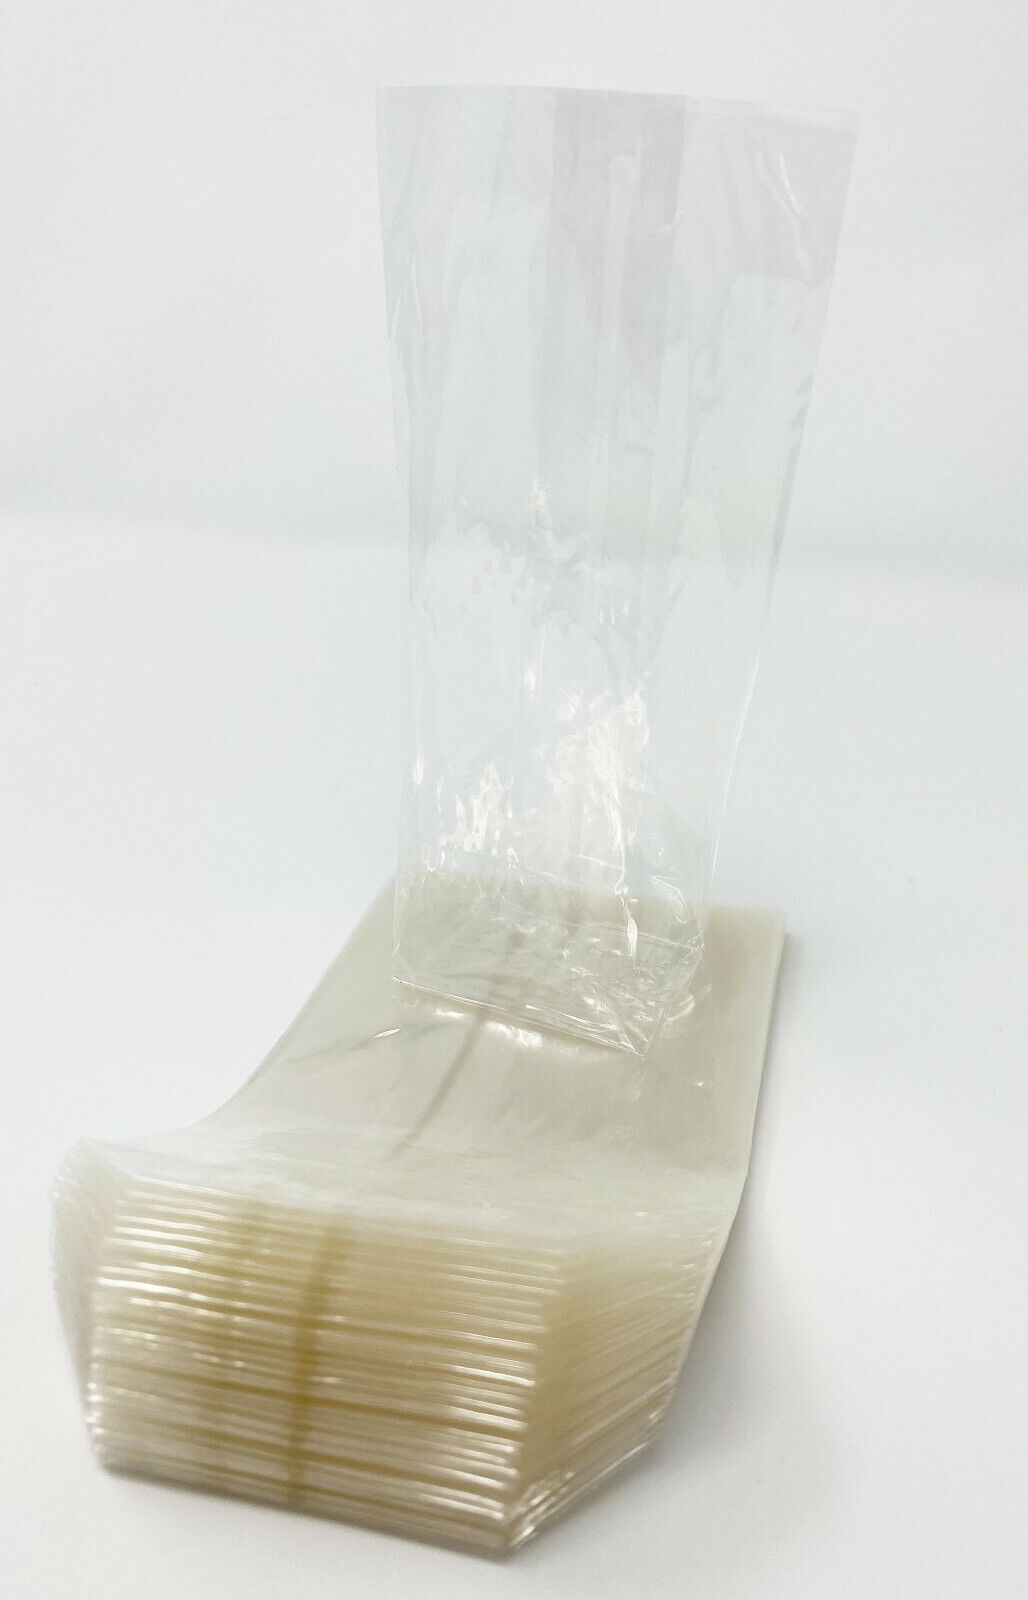 Zellglas Cellophan biologisch abbaubar Beutel Tüten Zellophan Plätzchen 7,5x13cm